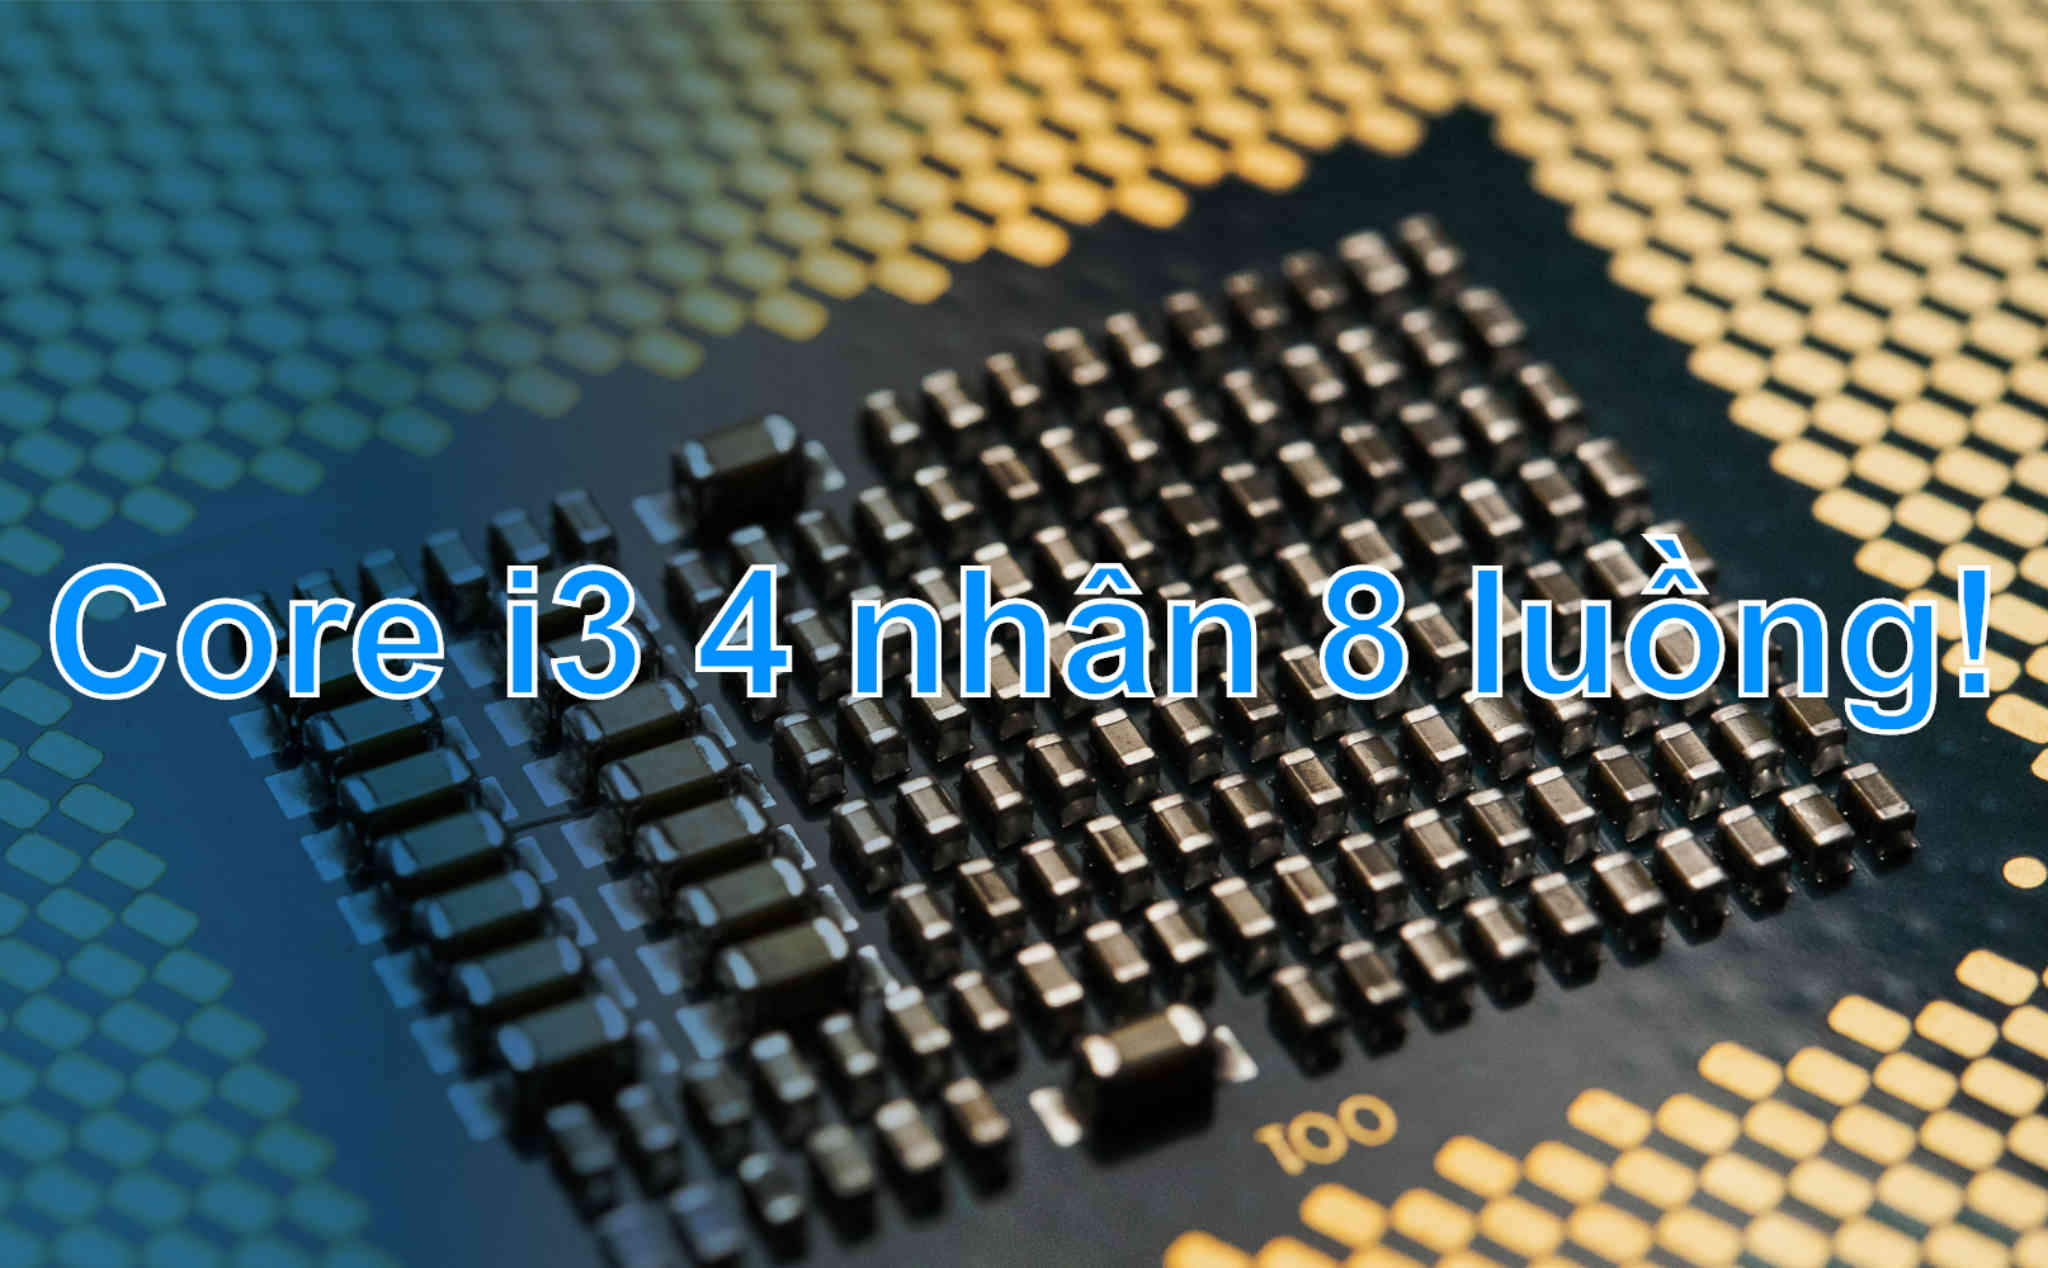 Core i3 thế hệ 10 cho desktop sẽ có 4 nhân 8 luồng, Intel quyết 